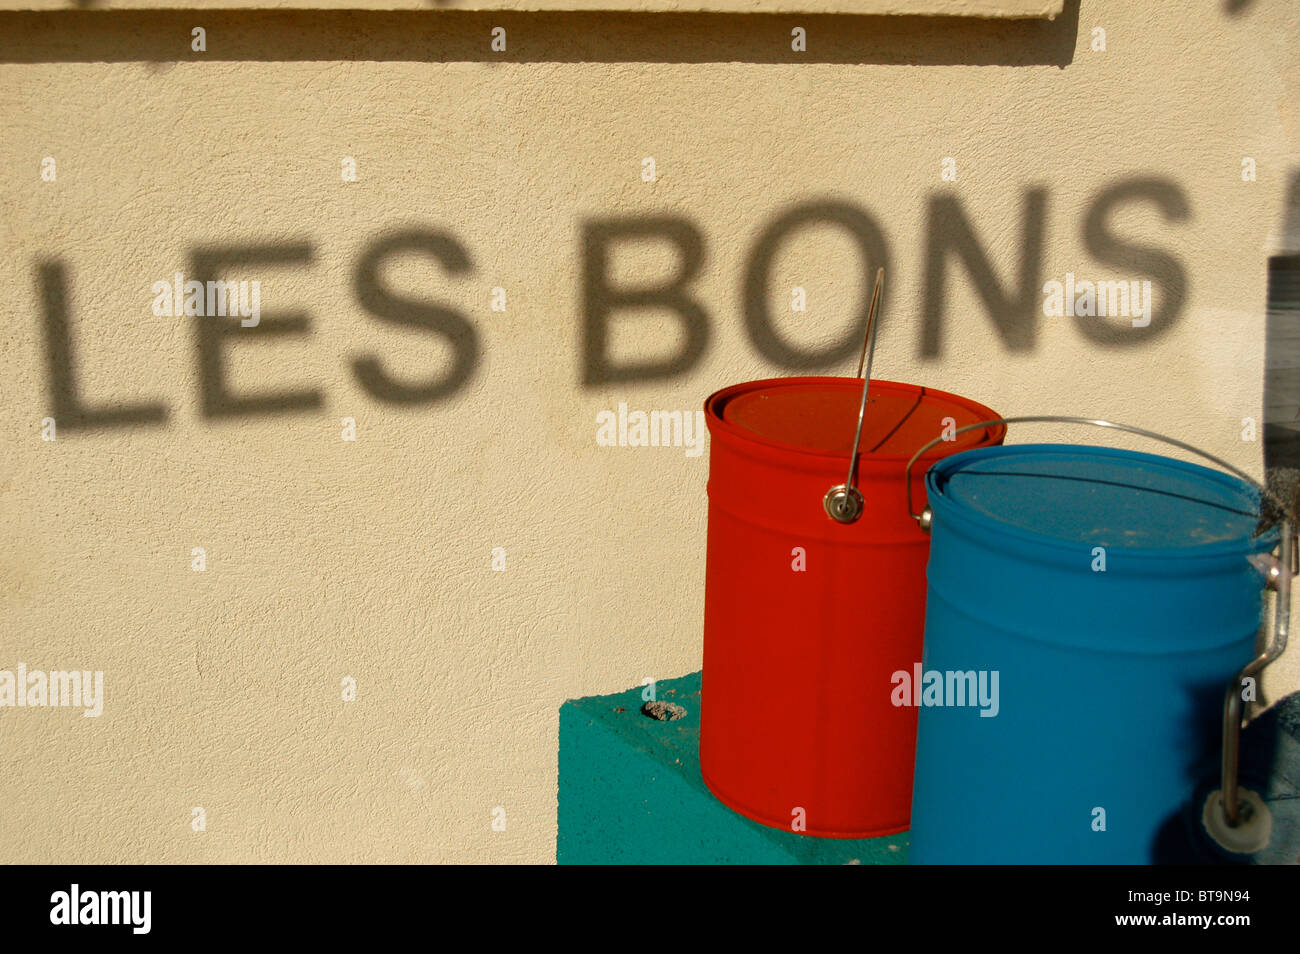 "Les Bons" Stimmen im Schatten im Schaufenster, mit roten und blauen Schmerzen Dosen, Nizza, Frankreich Stockfoto